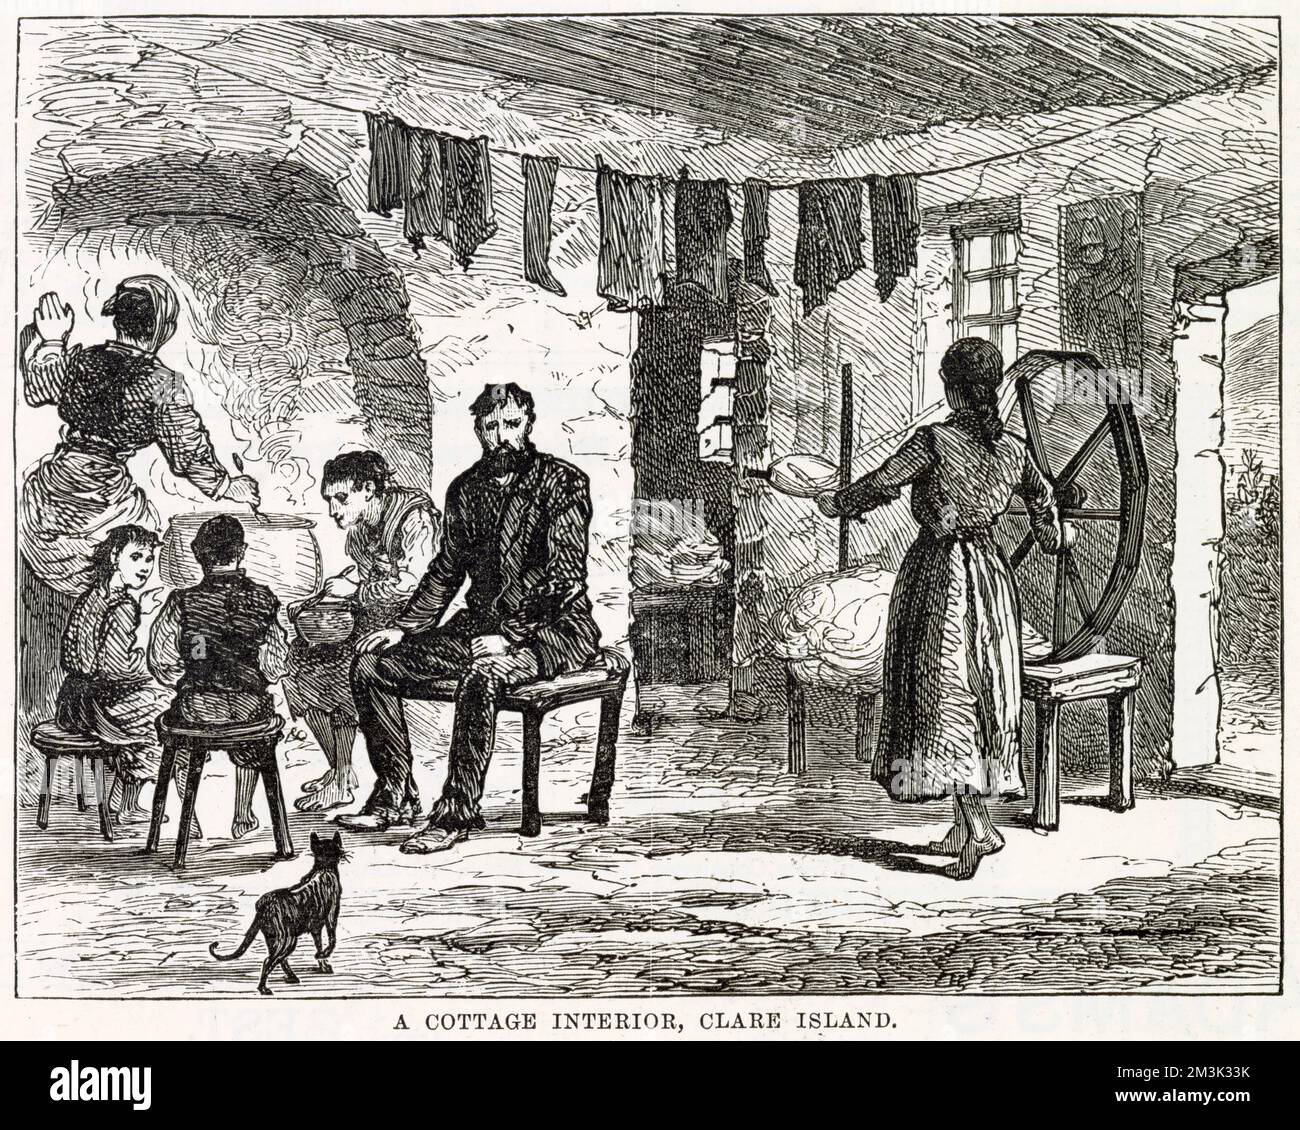 Eine Familienszene in einem überfüllten und beengten Cottage mit Wäscherei an einer Wäscheleine und einer Katze im Preis inbegriffen. Eine Dame dreht Garn in der Nähe der Tür, eine andere rührt einen Topf am Kamin, während der Rest der Familie neben ihr sitzt. Die Kartoffelknappheit in der Mitte des 19. Jahrhunderts auf Clare Island, westlich von Irland, führte zu miserablen Bedingungen. Stockfoto